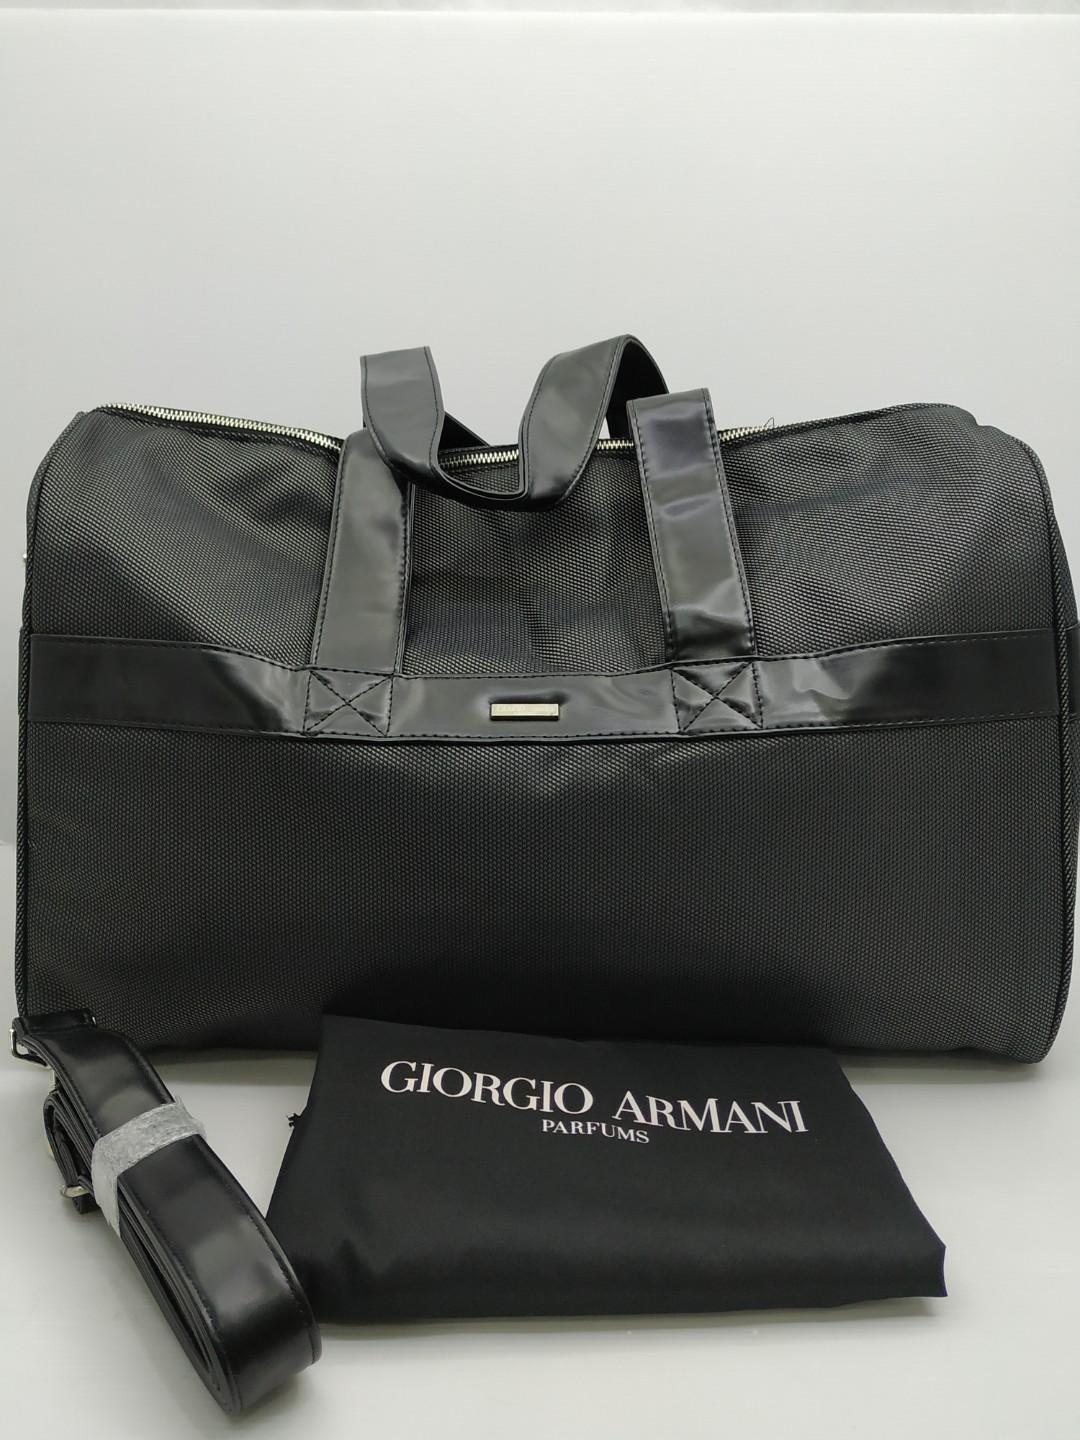 Giorgio Armani Duffle Bag 187004614 